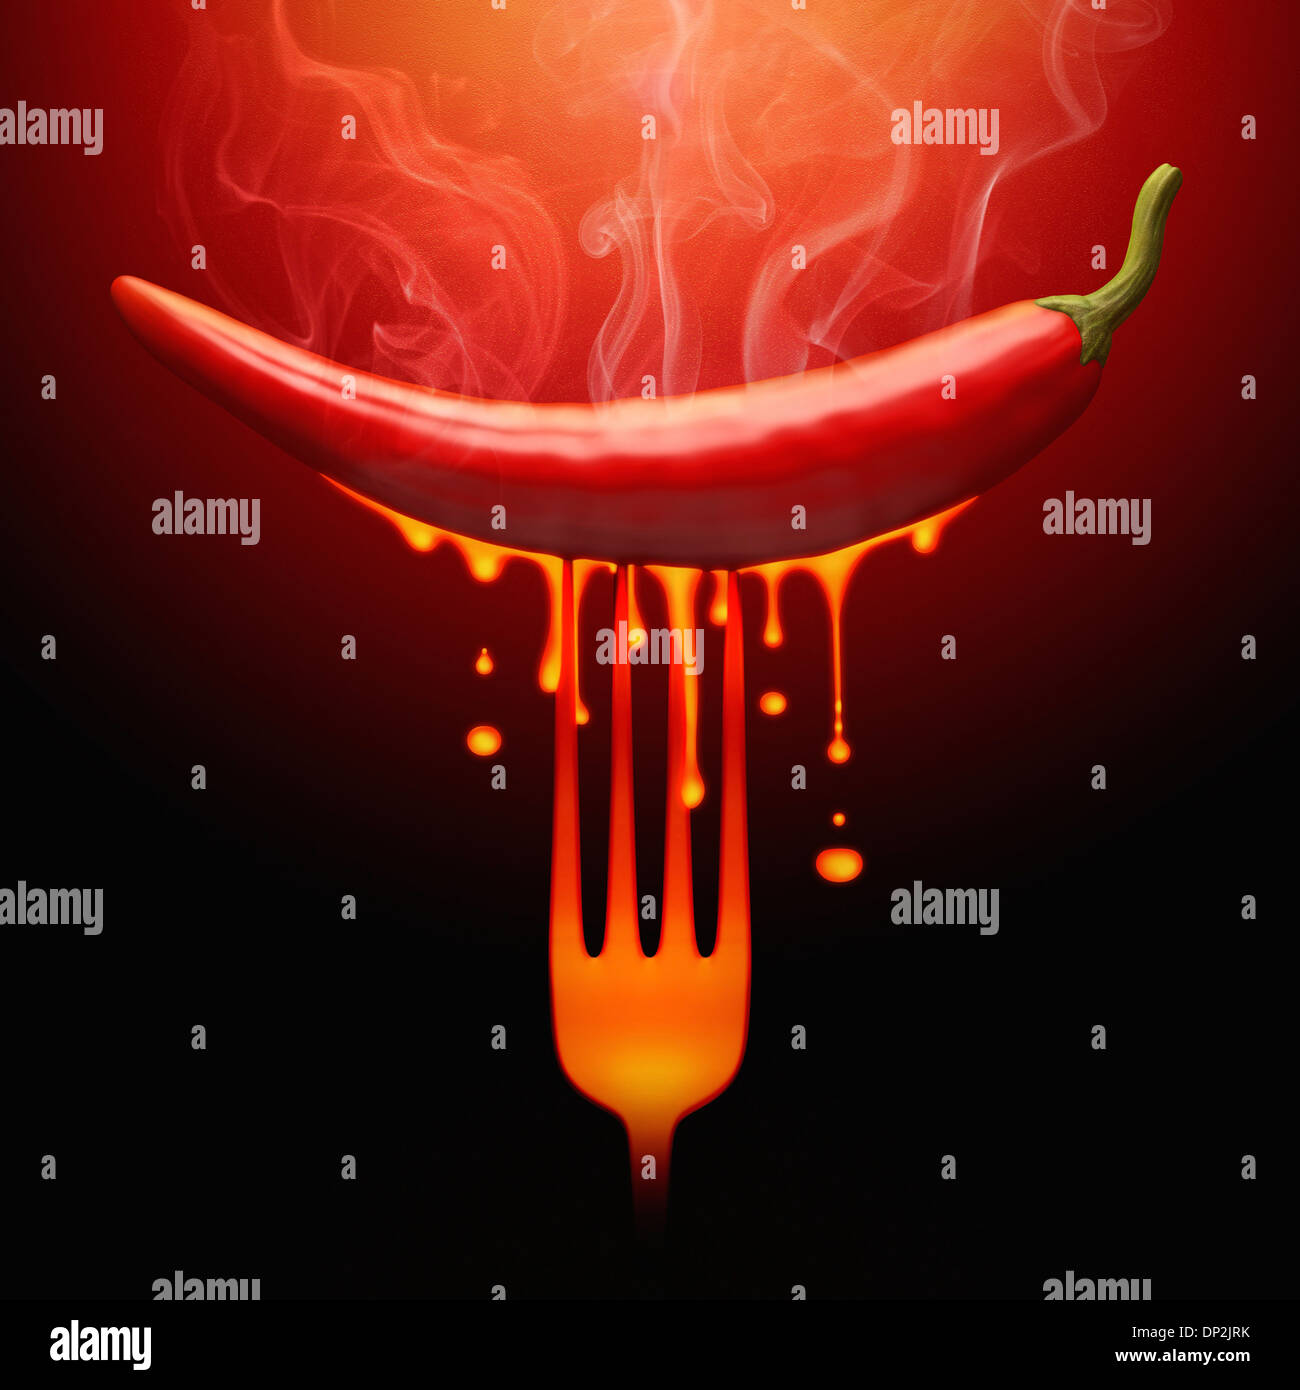 Hot chilli pepper, conceptual image Stock Photo